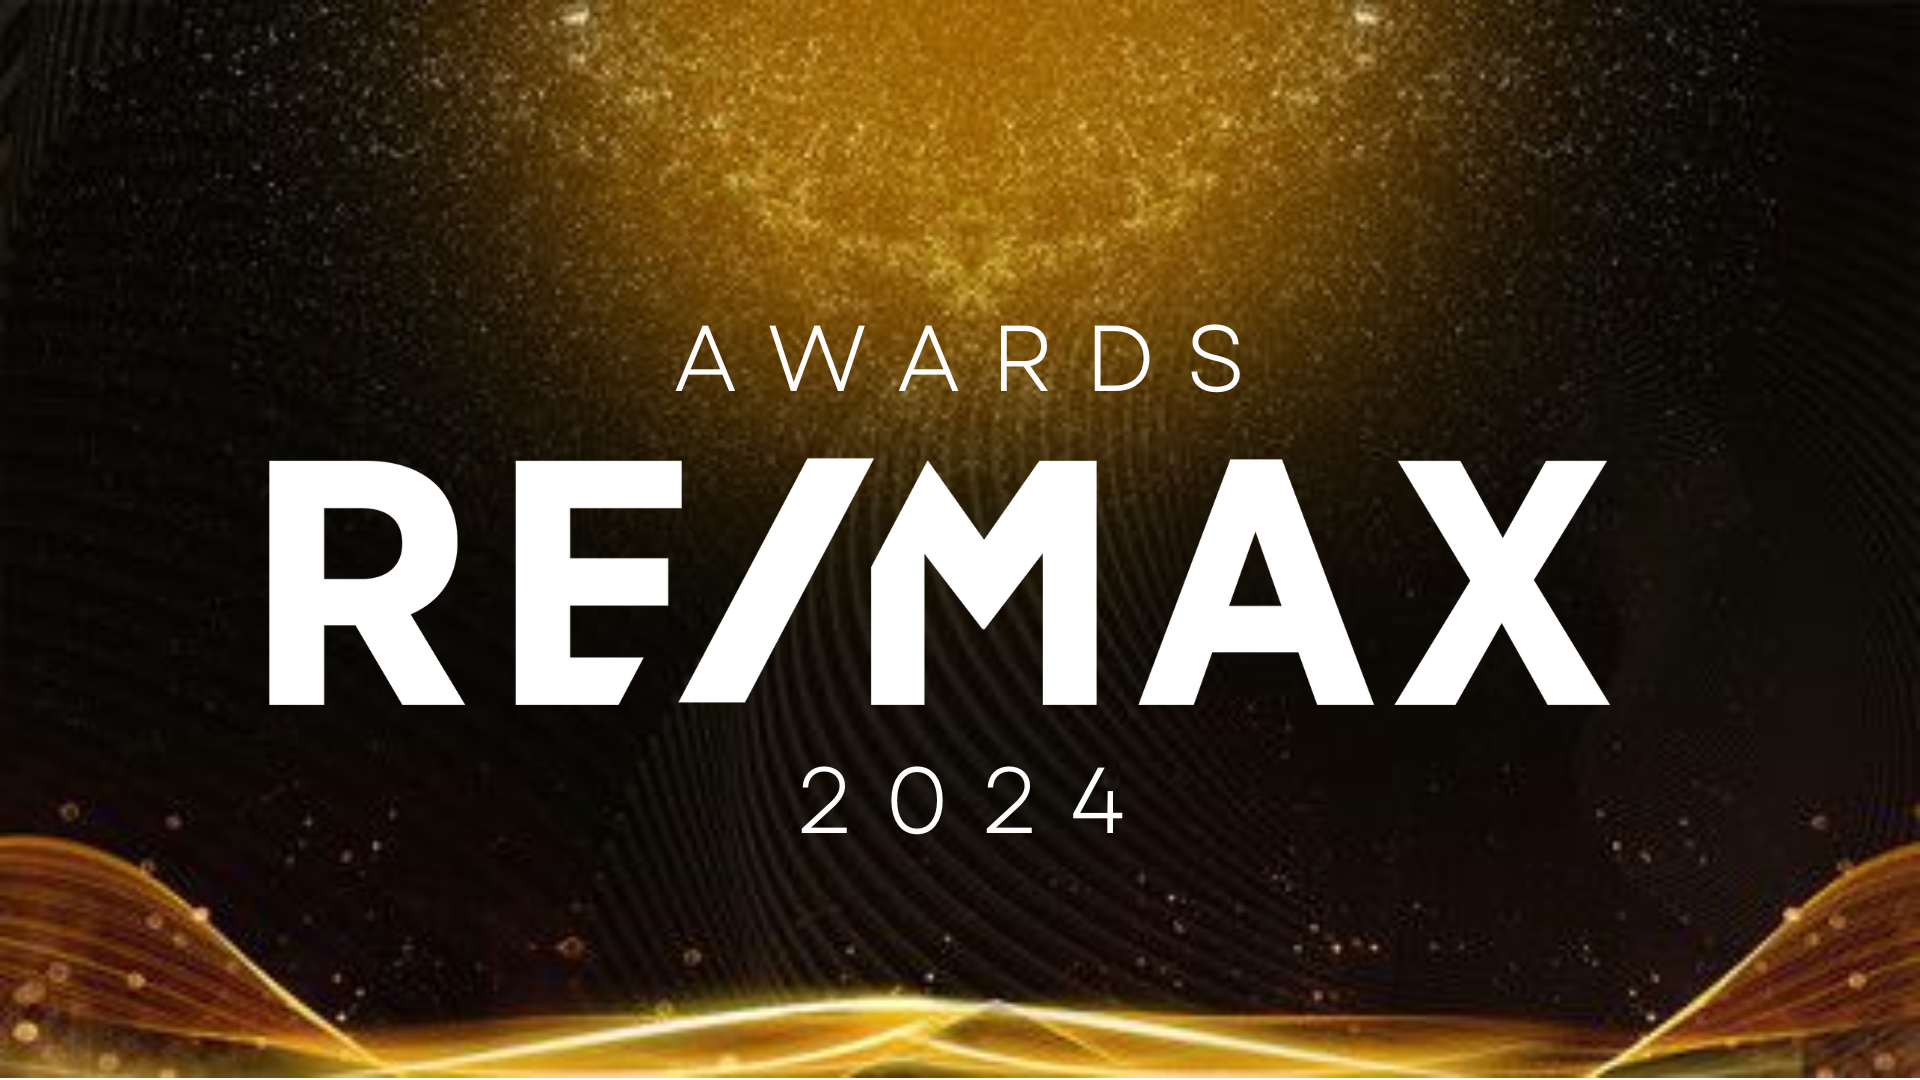 Awards RE/MAX - 2024 